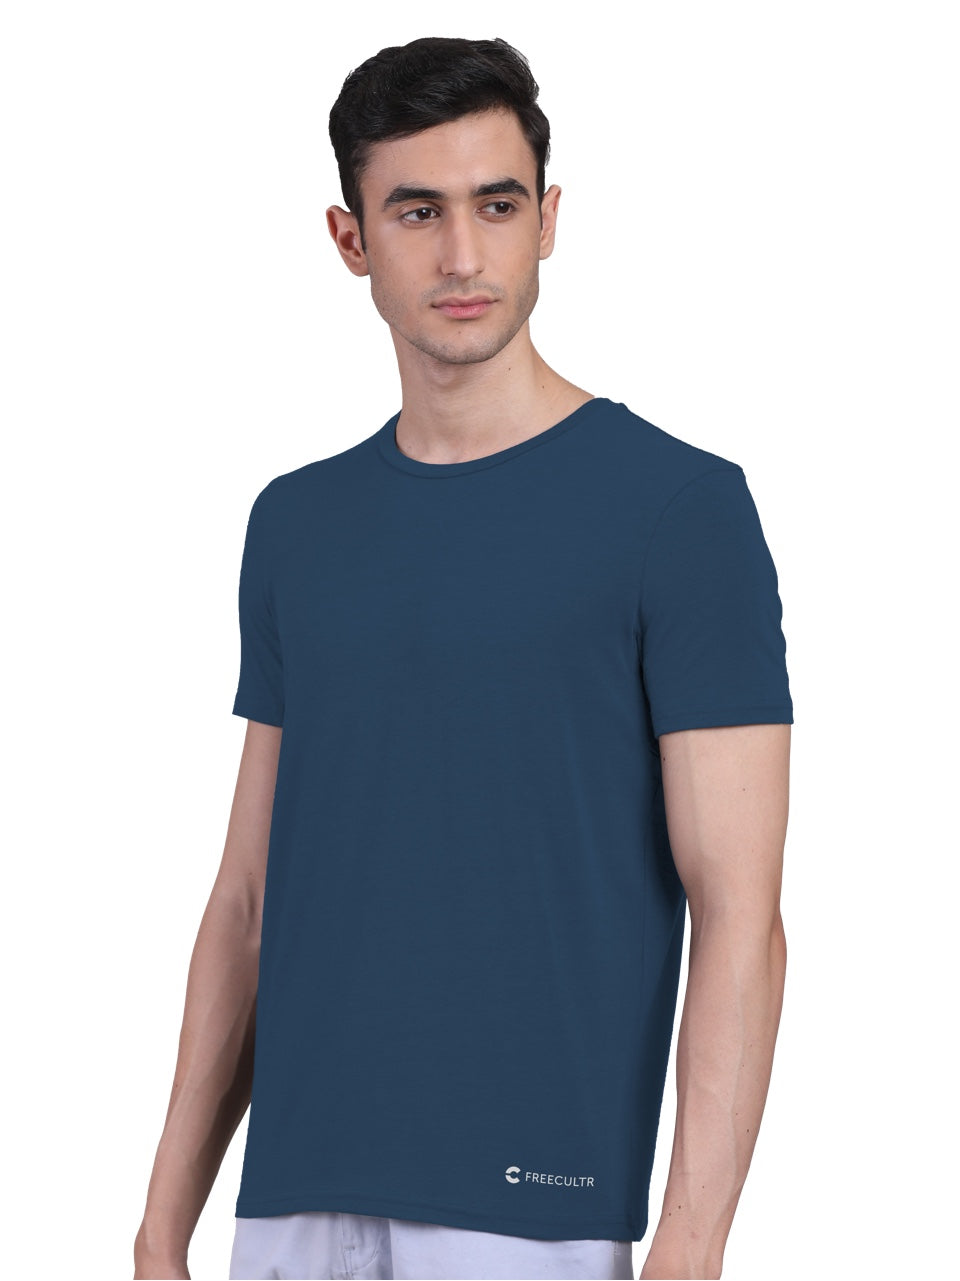 Men's Half Sleeves Bamboo Undershirts (Loungewear & Sleepwear)- Pack of 1